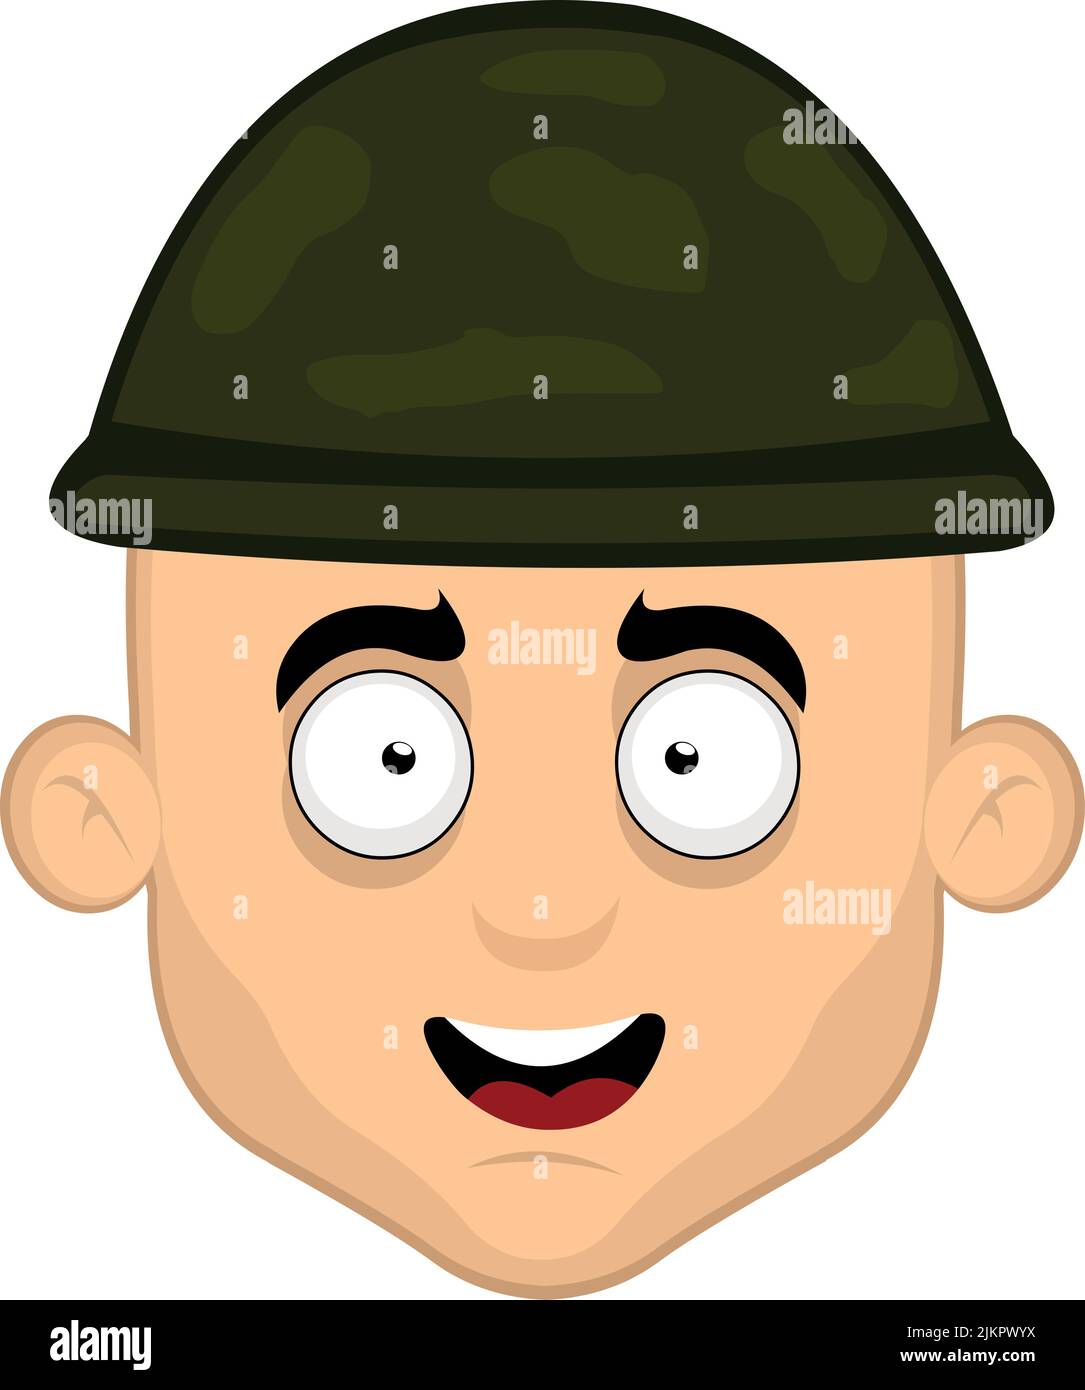 Vektor-Illustration des Gesichts eines Cartoon-Soldaten mit einem glücklichen Ausdruck Stock Vektor